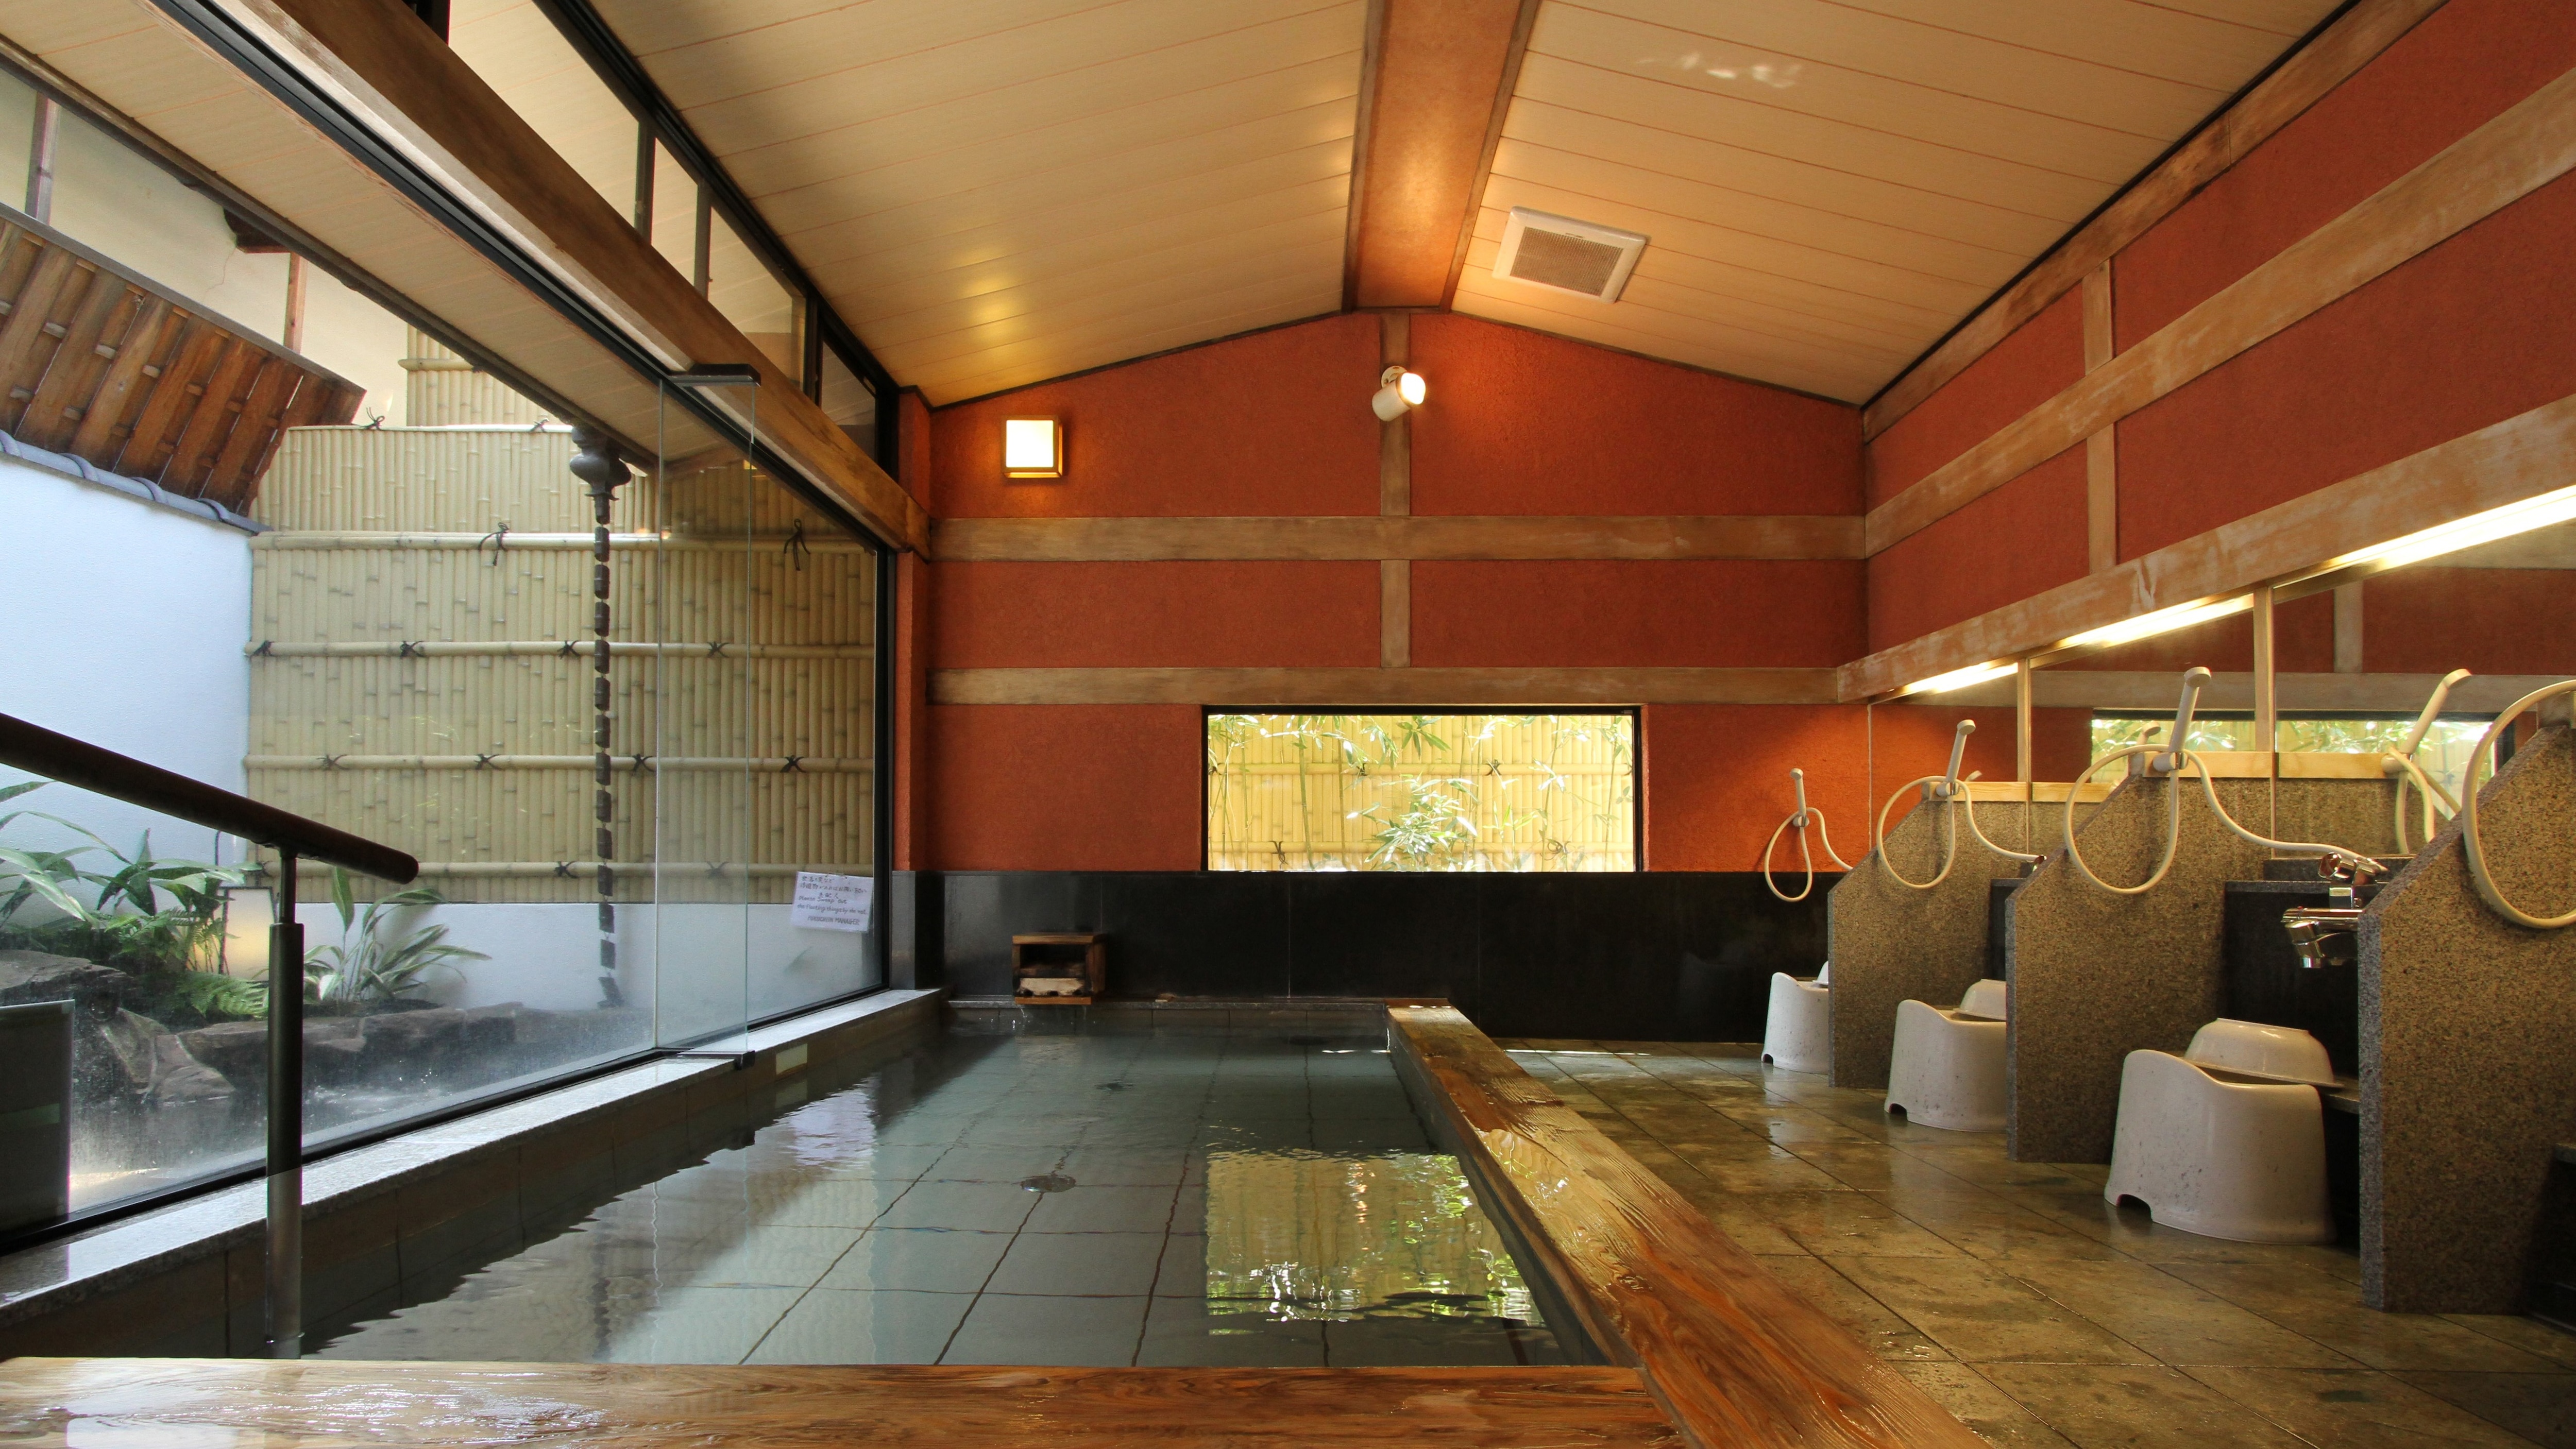 [Tenjo no Yu] 室内浴池是使用高野真希的芳香浴池。